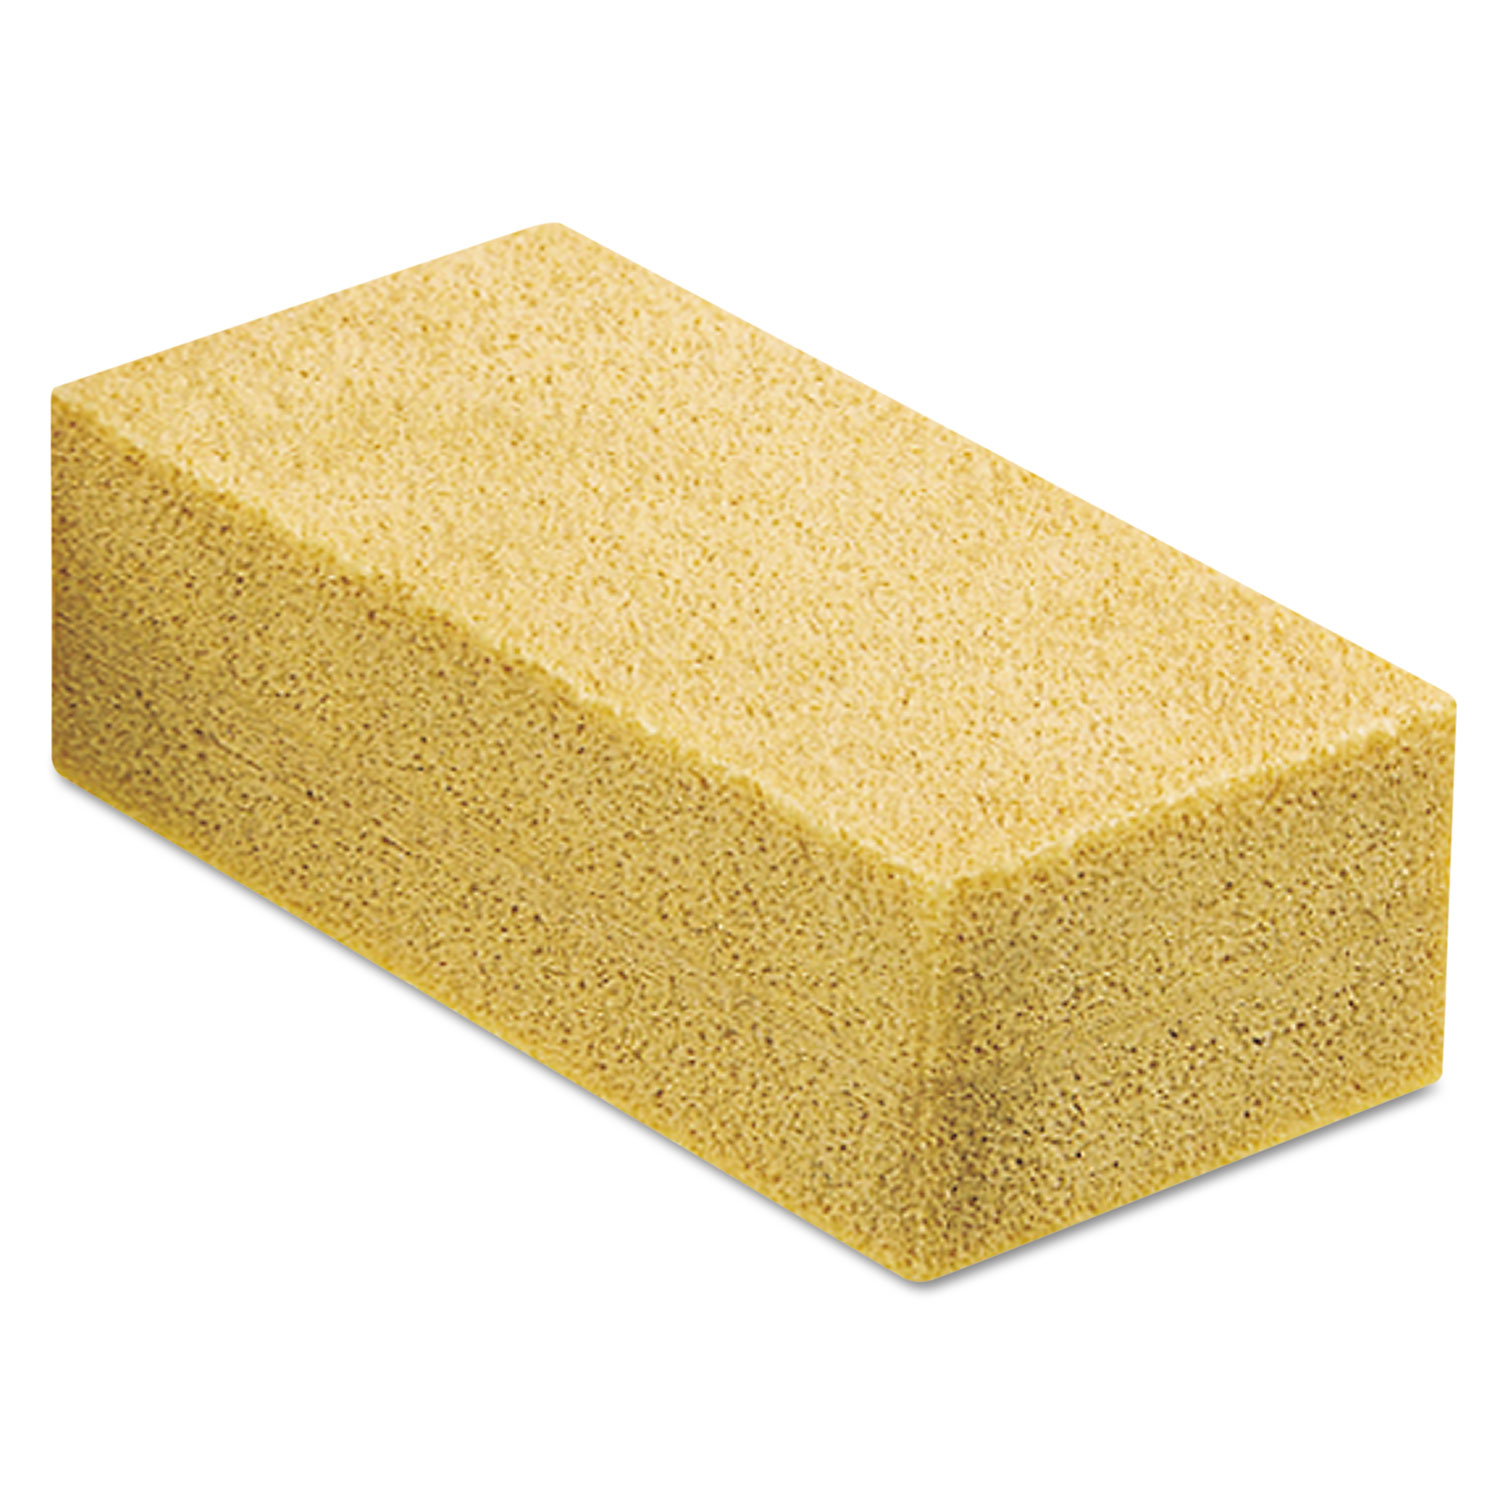 Fixi-Clamp Sponge, 8 x 3 in, 2 Thick, Orange